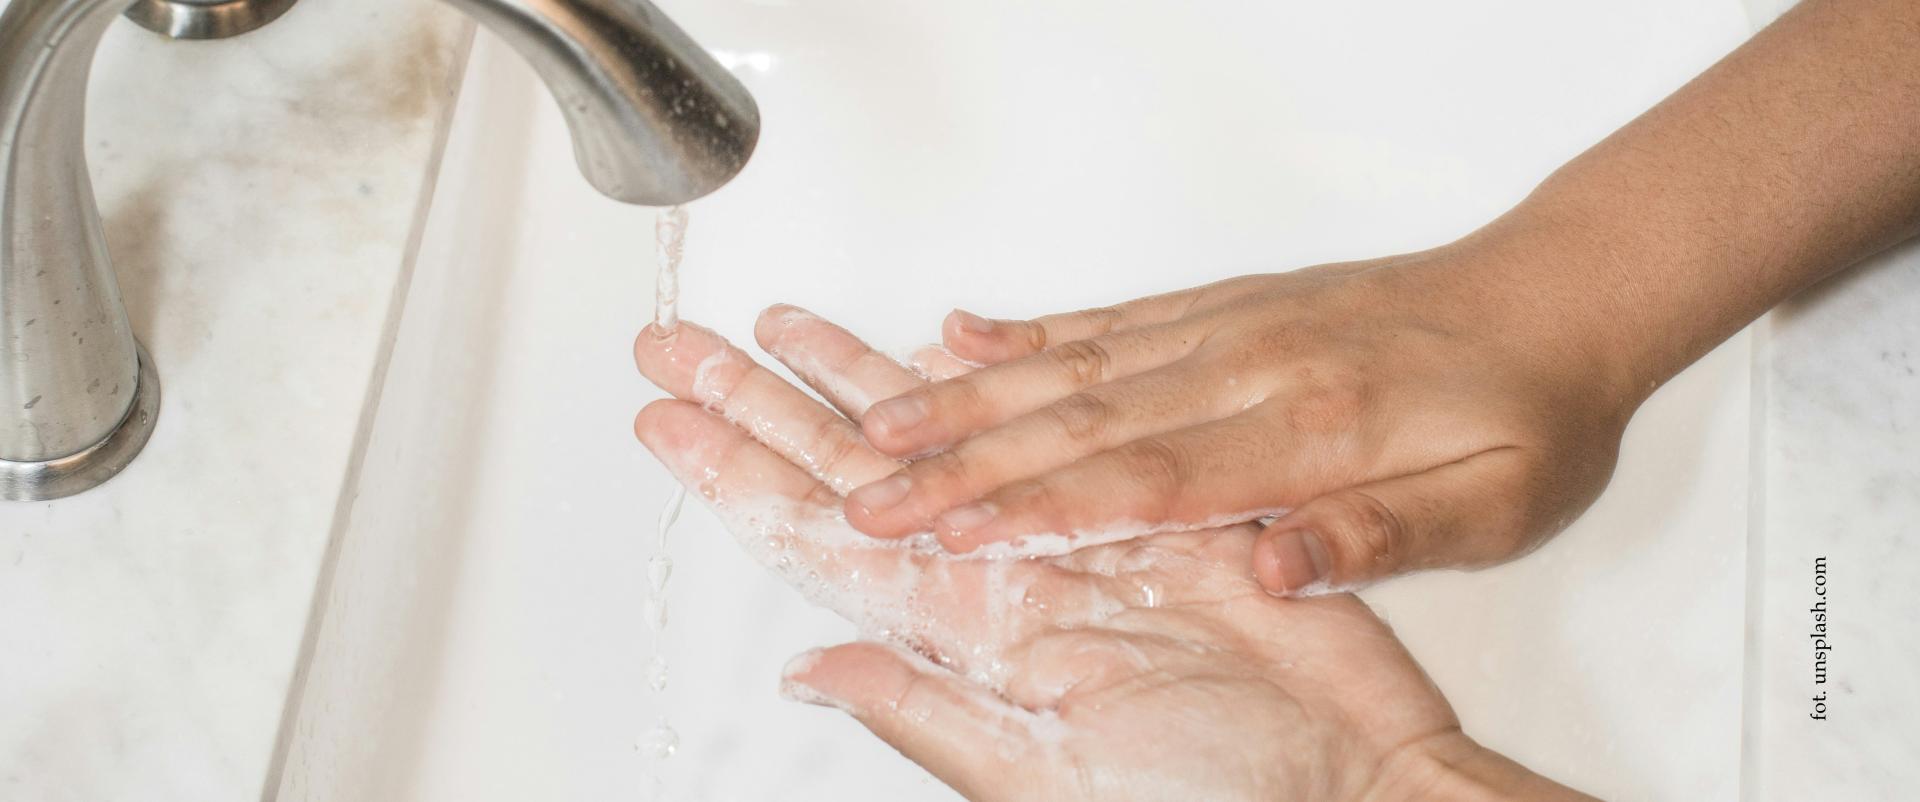 Higiena rąk ogranicza ryzyko zakażeń groźnymi patogenami